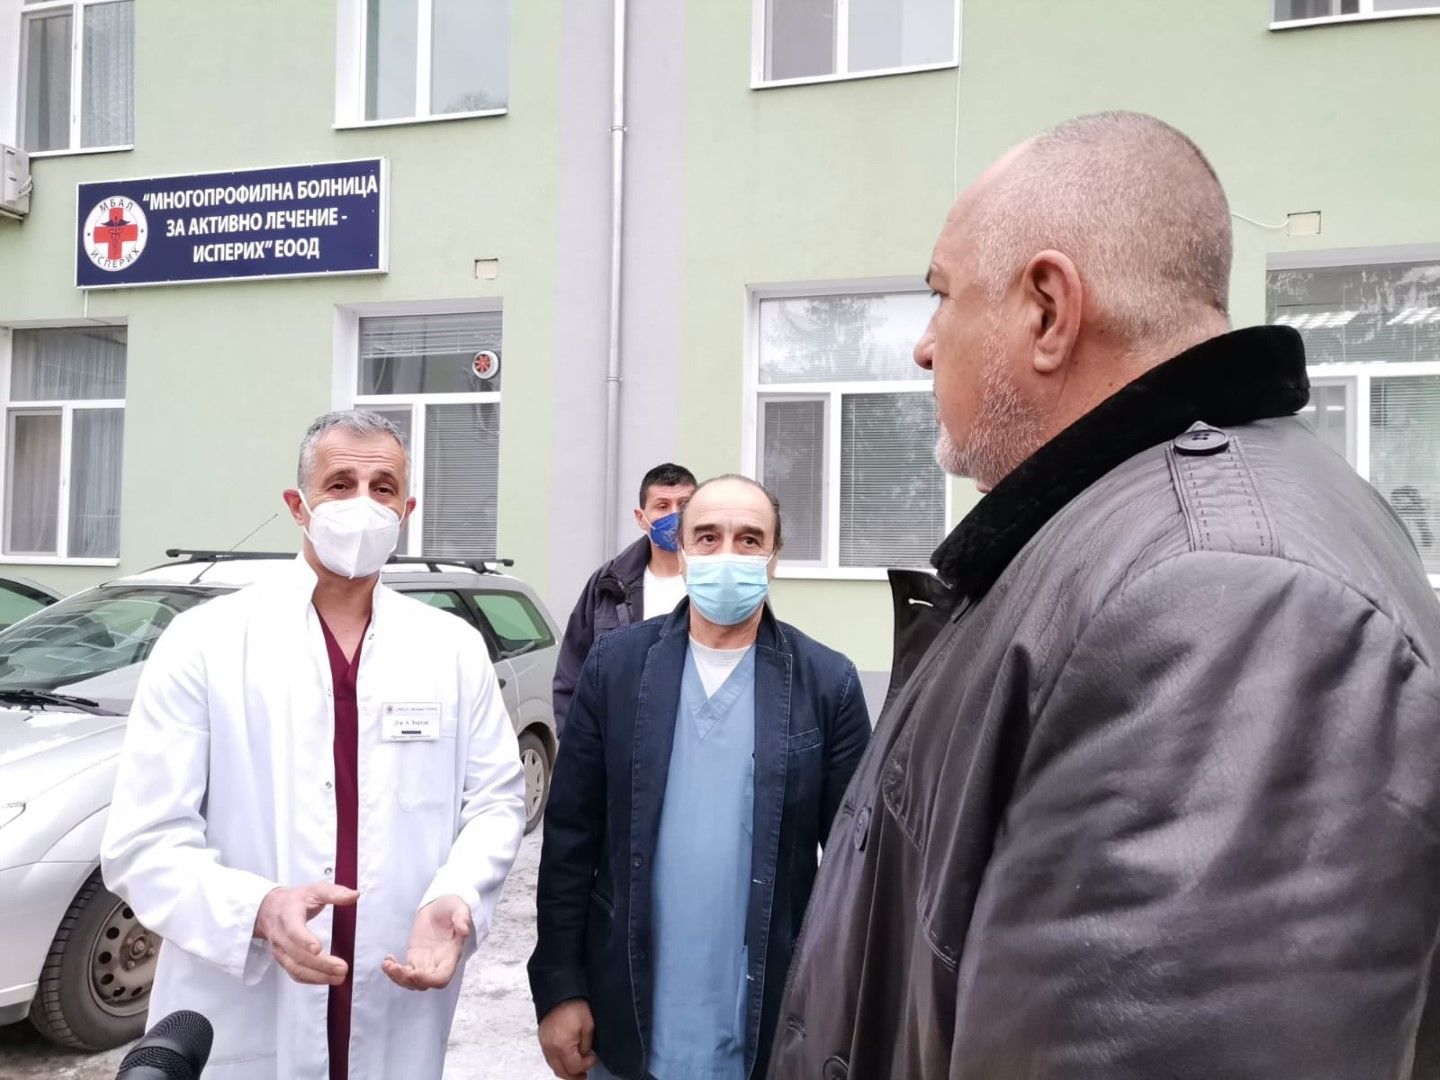 Хората не правят разлика държавна или общинска е болницата, каза премиерът Бойко Борисов в Исперих